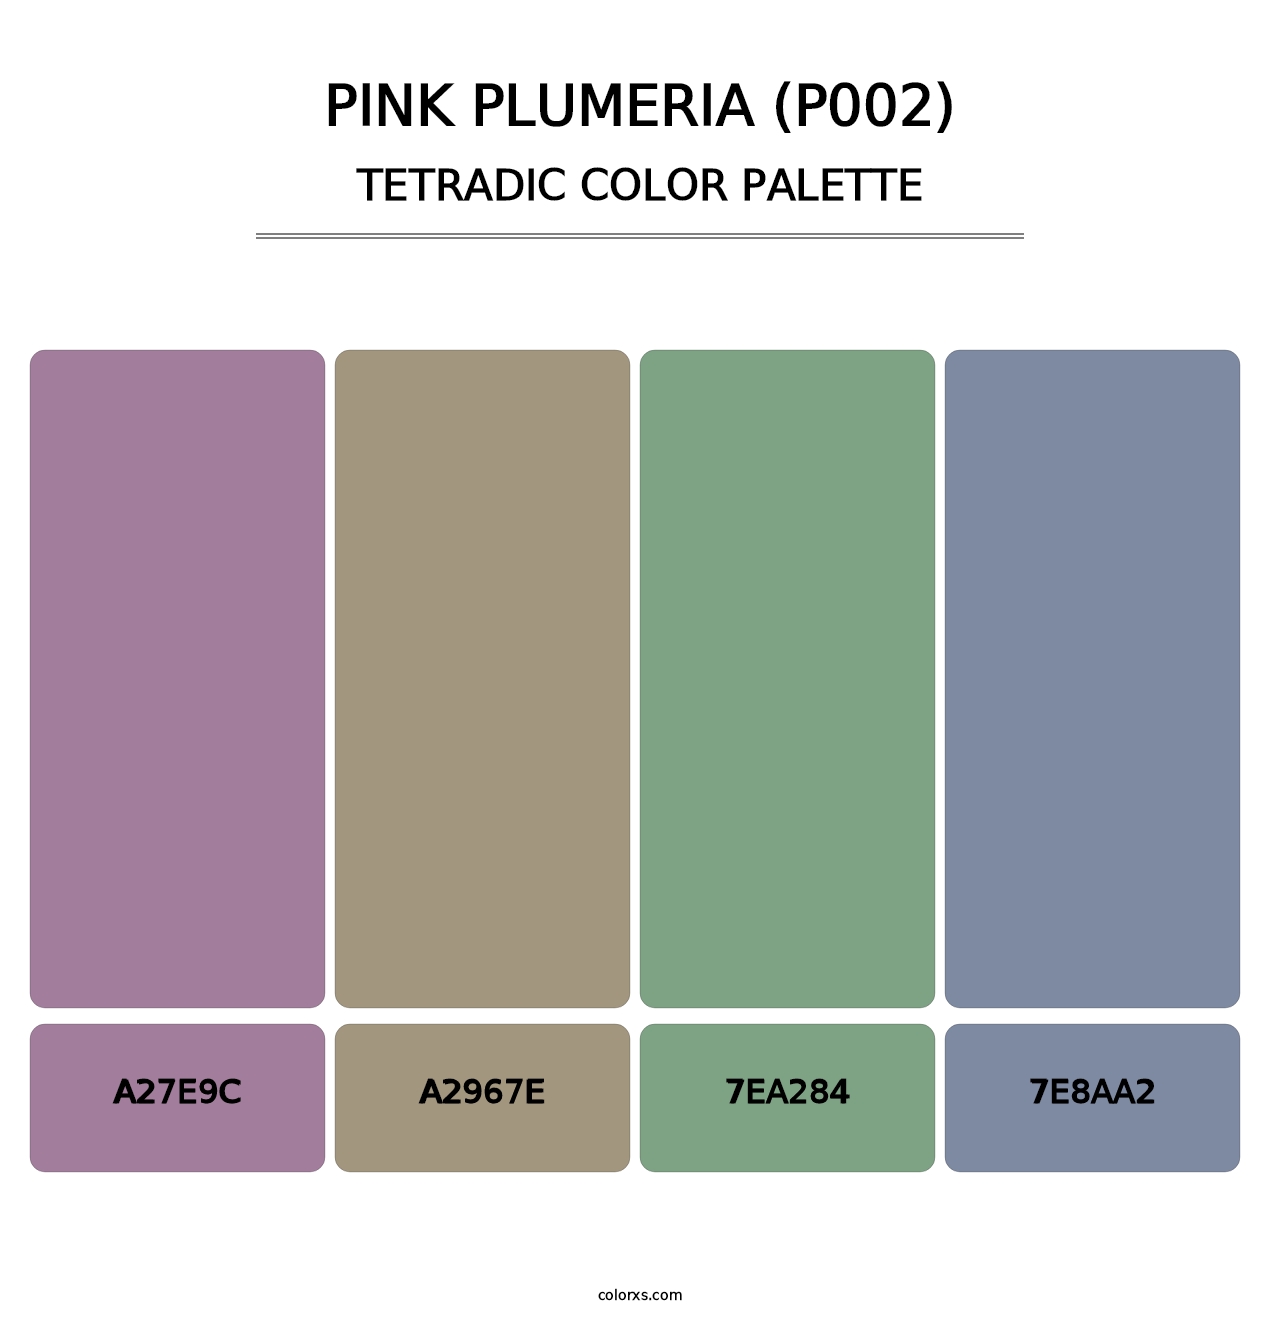 Pink Plumeria (P002) - Tetradic Color Palette